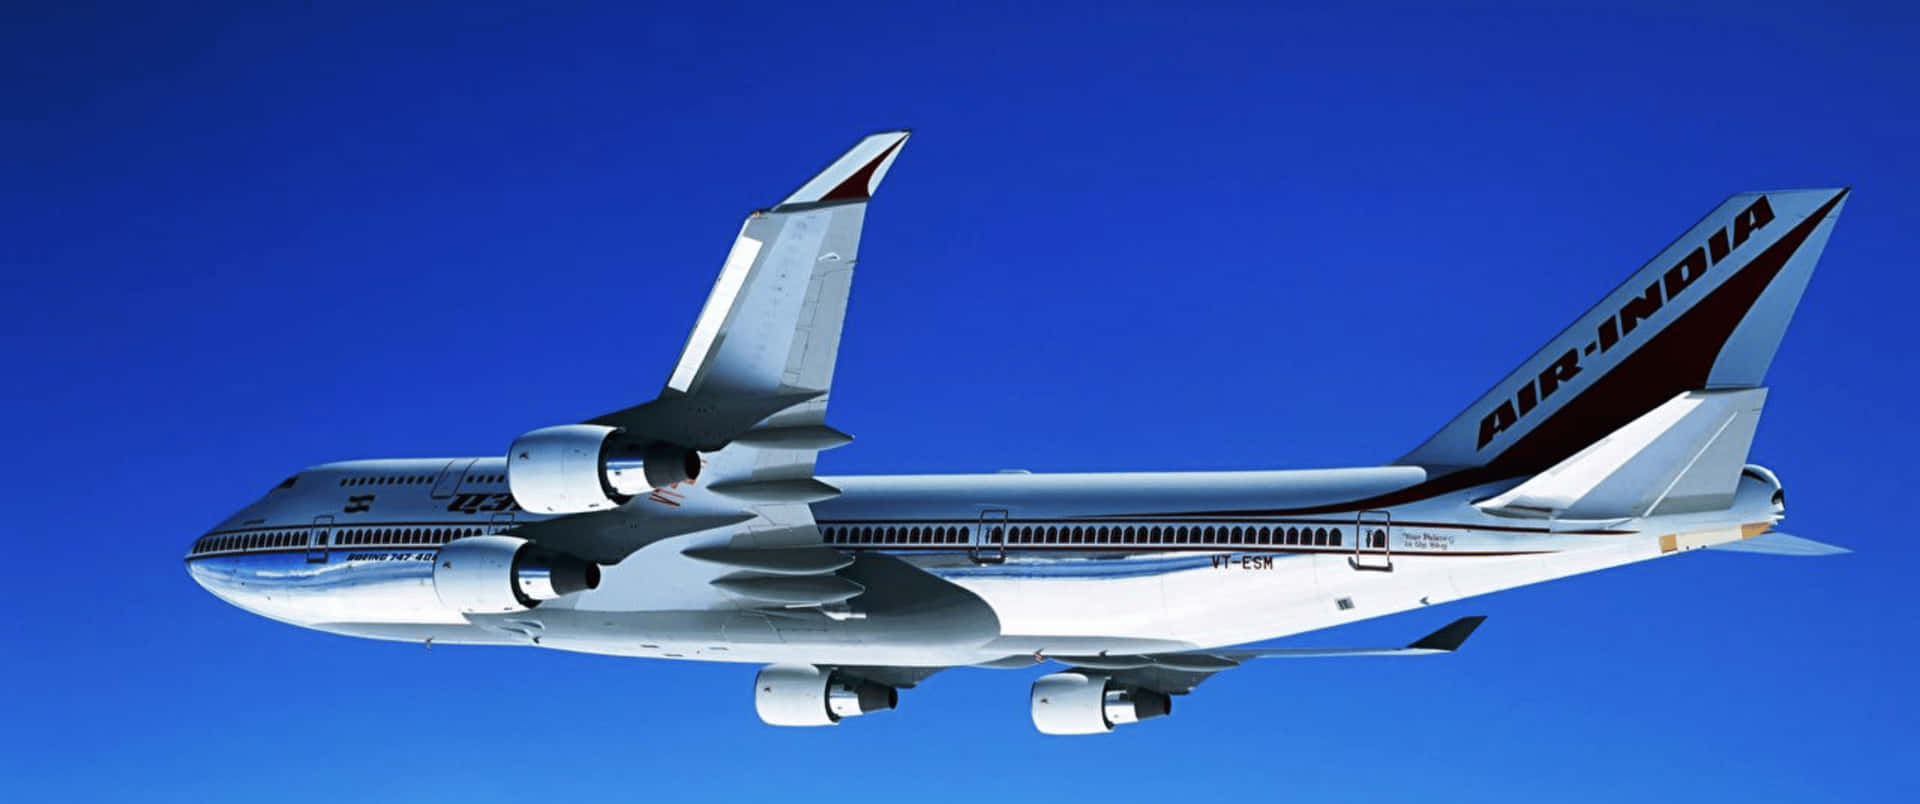 3440x1440p Plane Boeing 747 400 Background